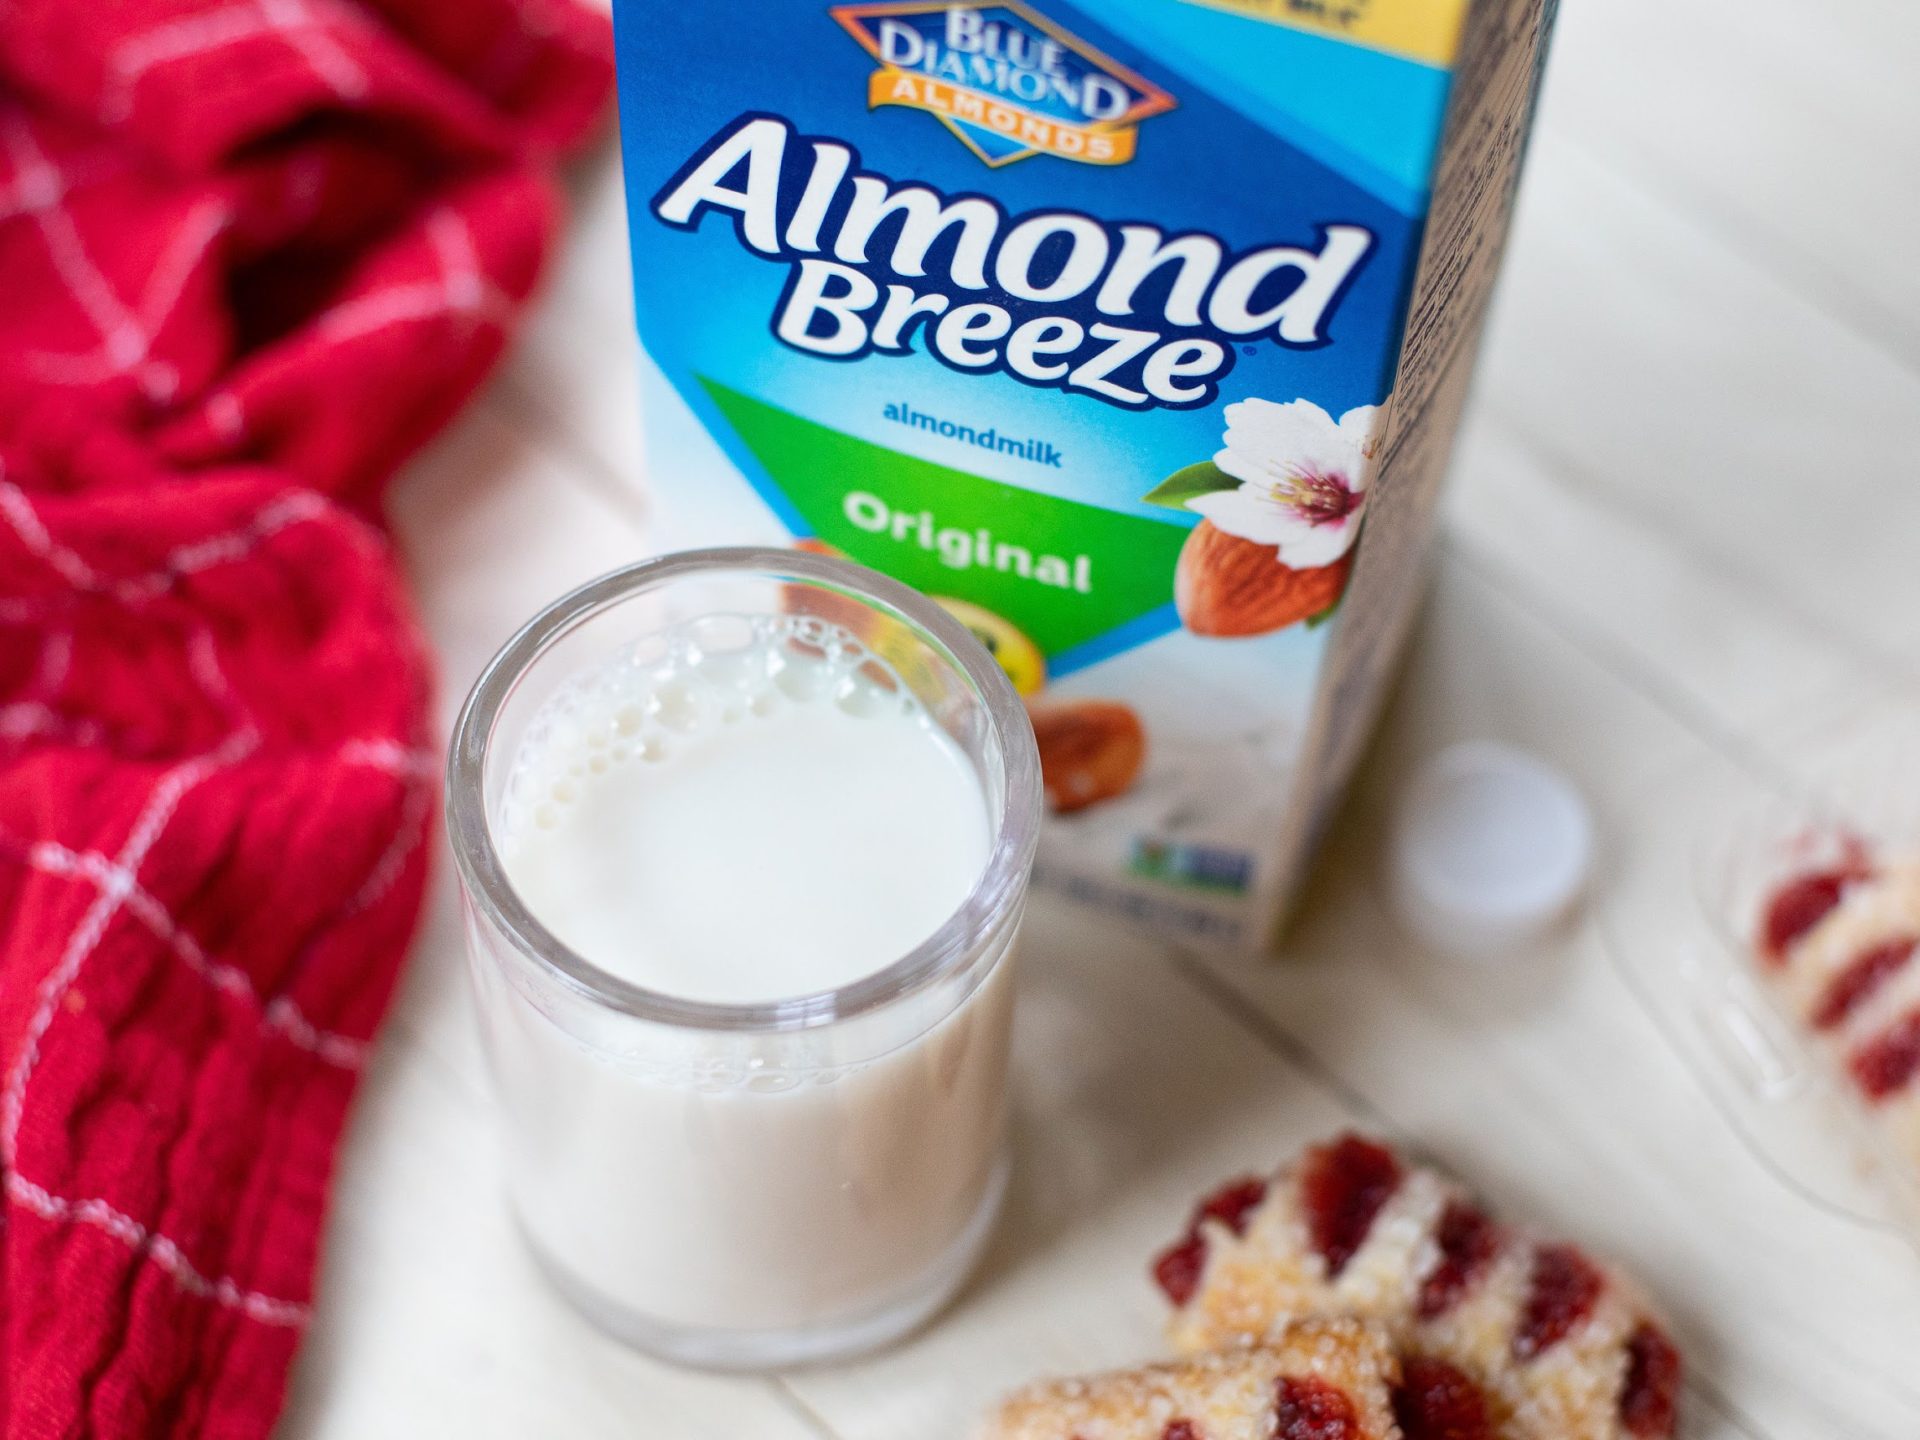 Almond Breeze Almondmilk As Low As $1.99 At Kroger